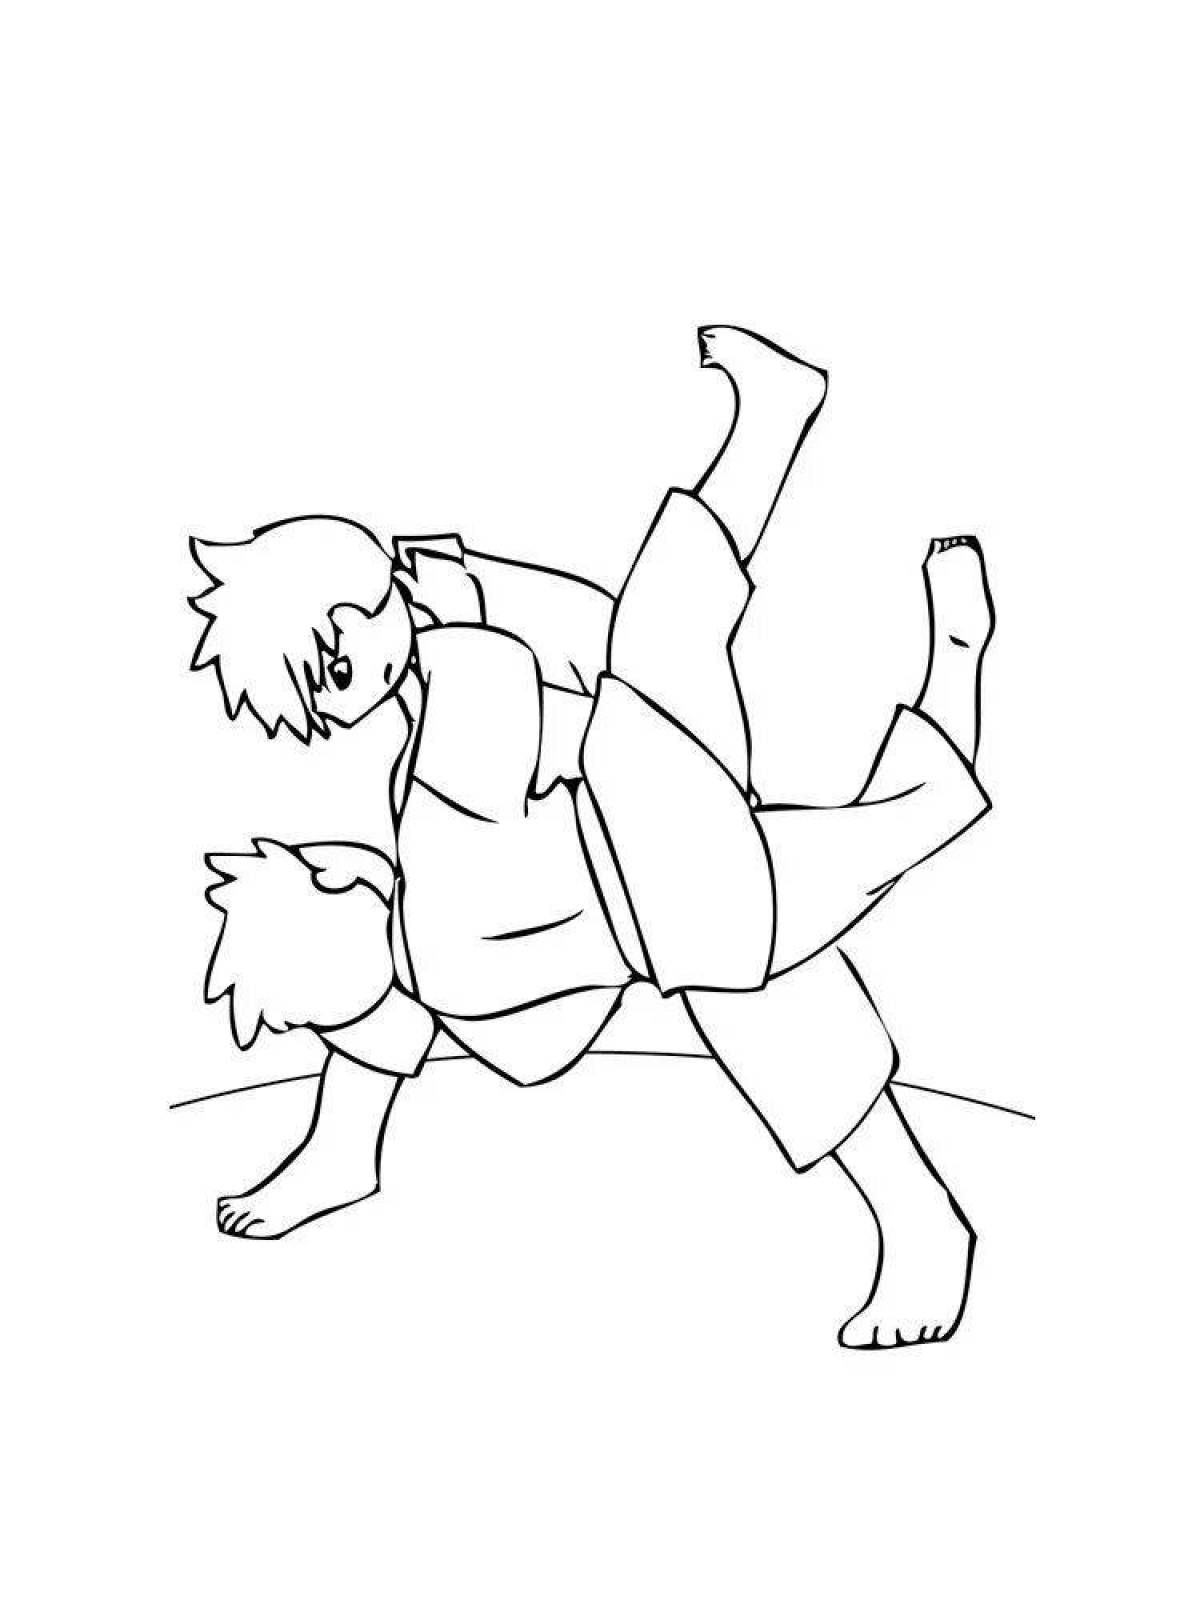 Judo coloring book